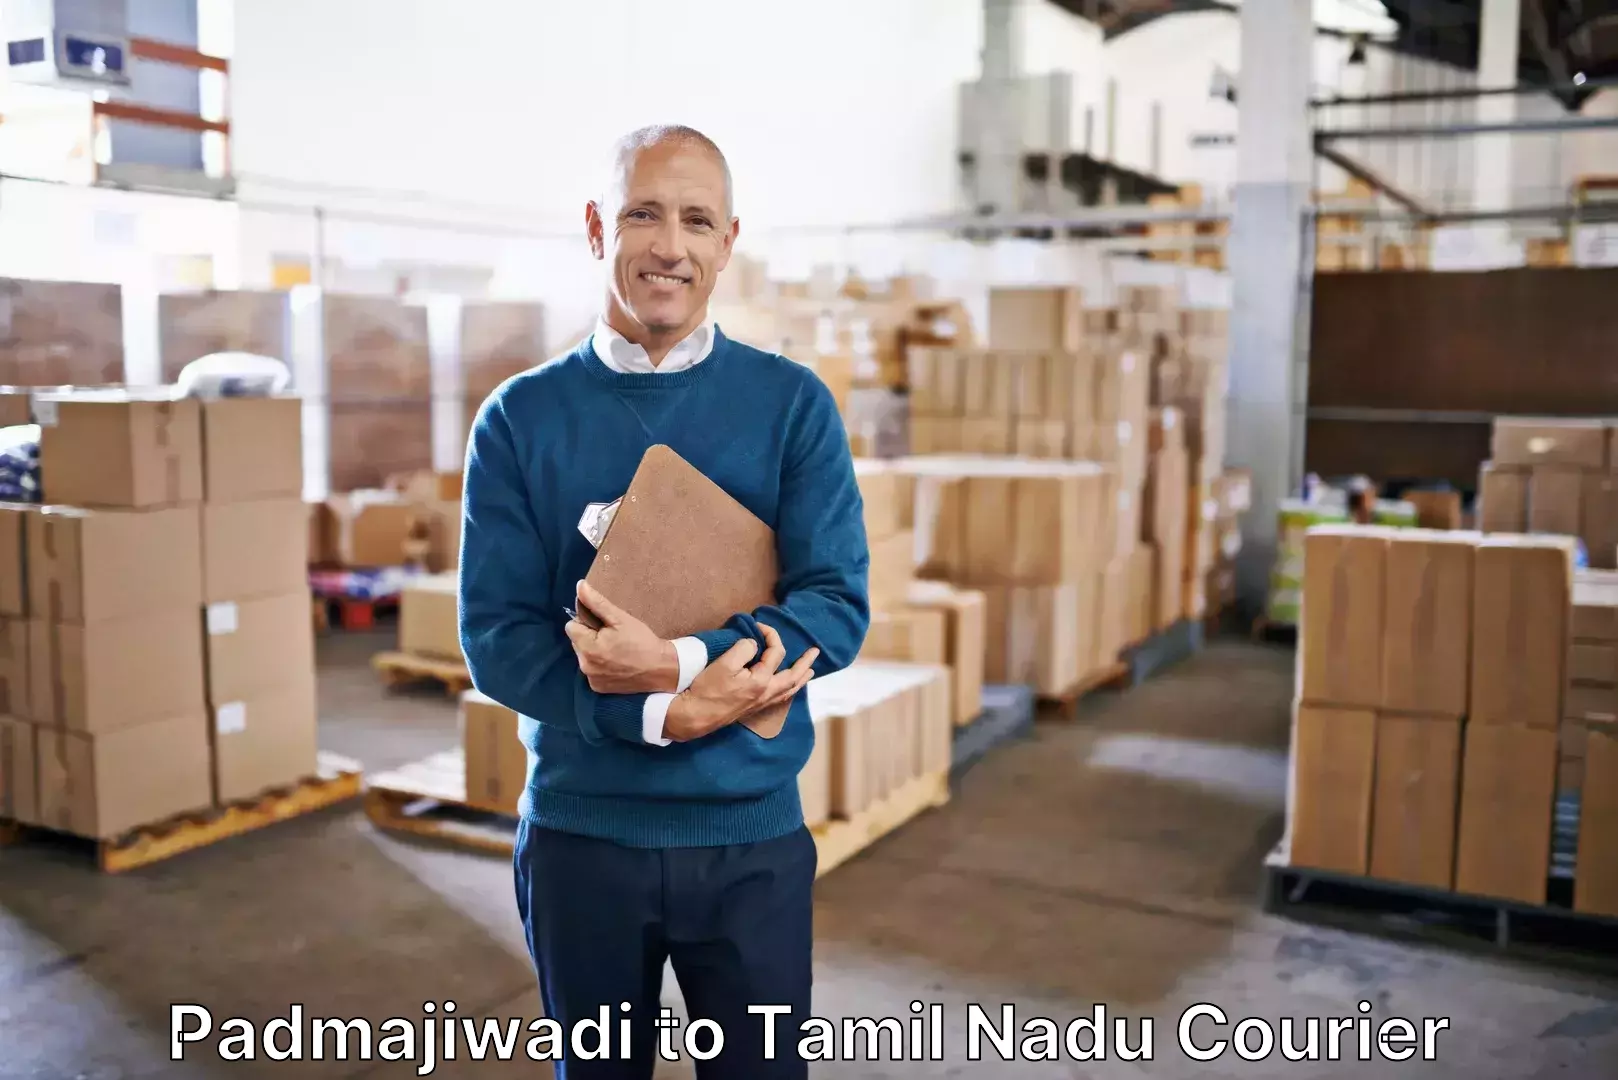 Direct baggage courier Padmajiwadi to Rajapalayam